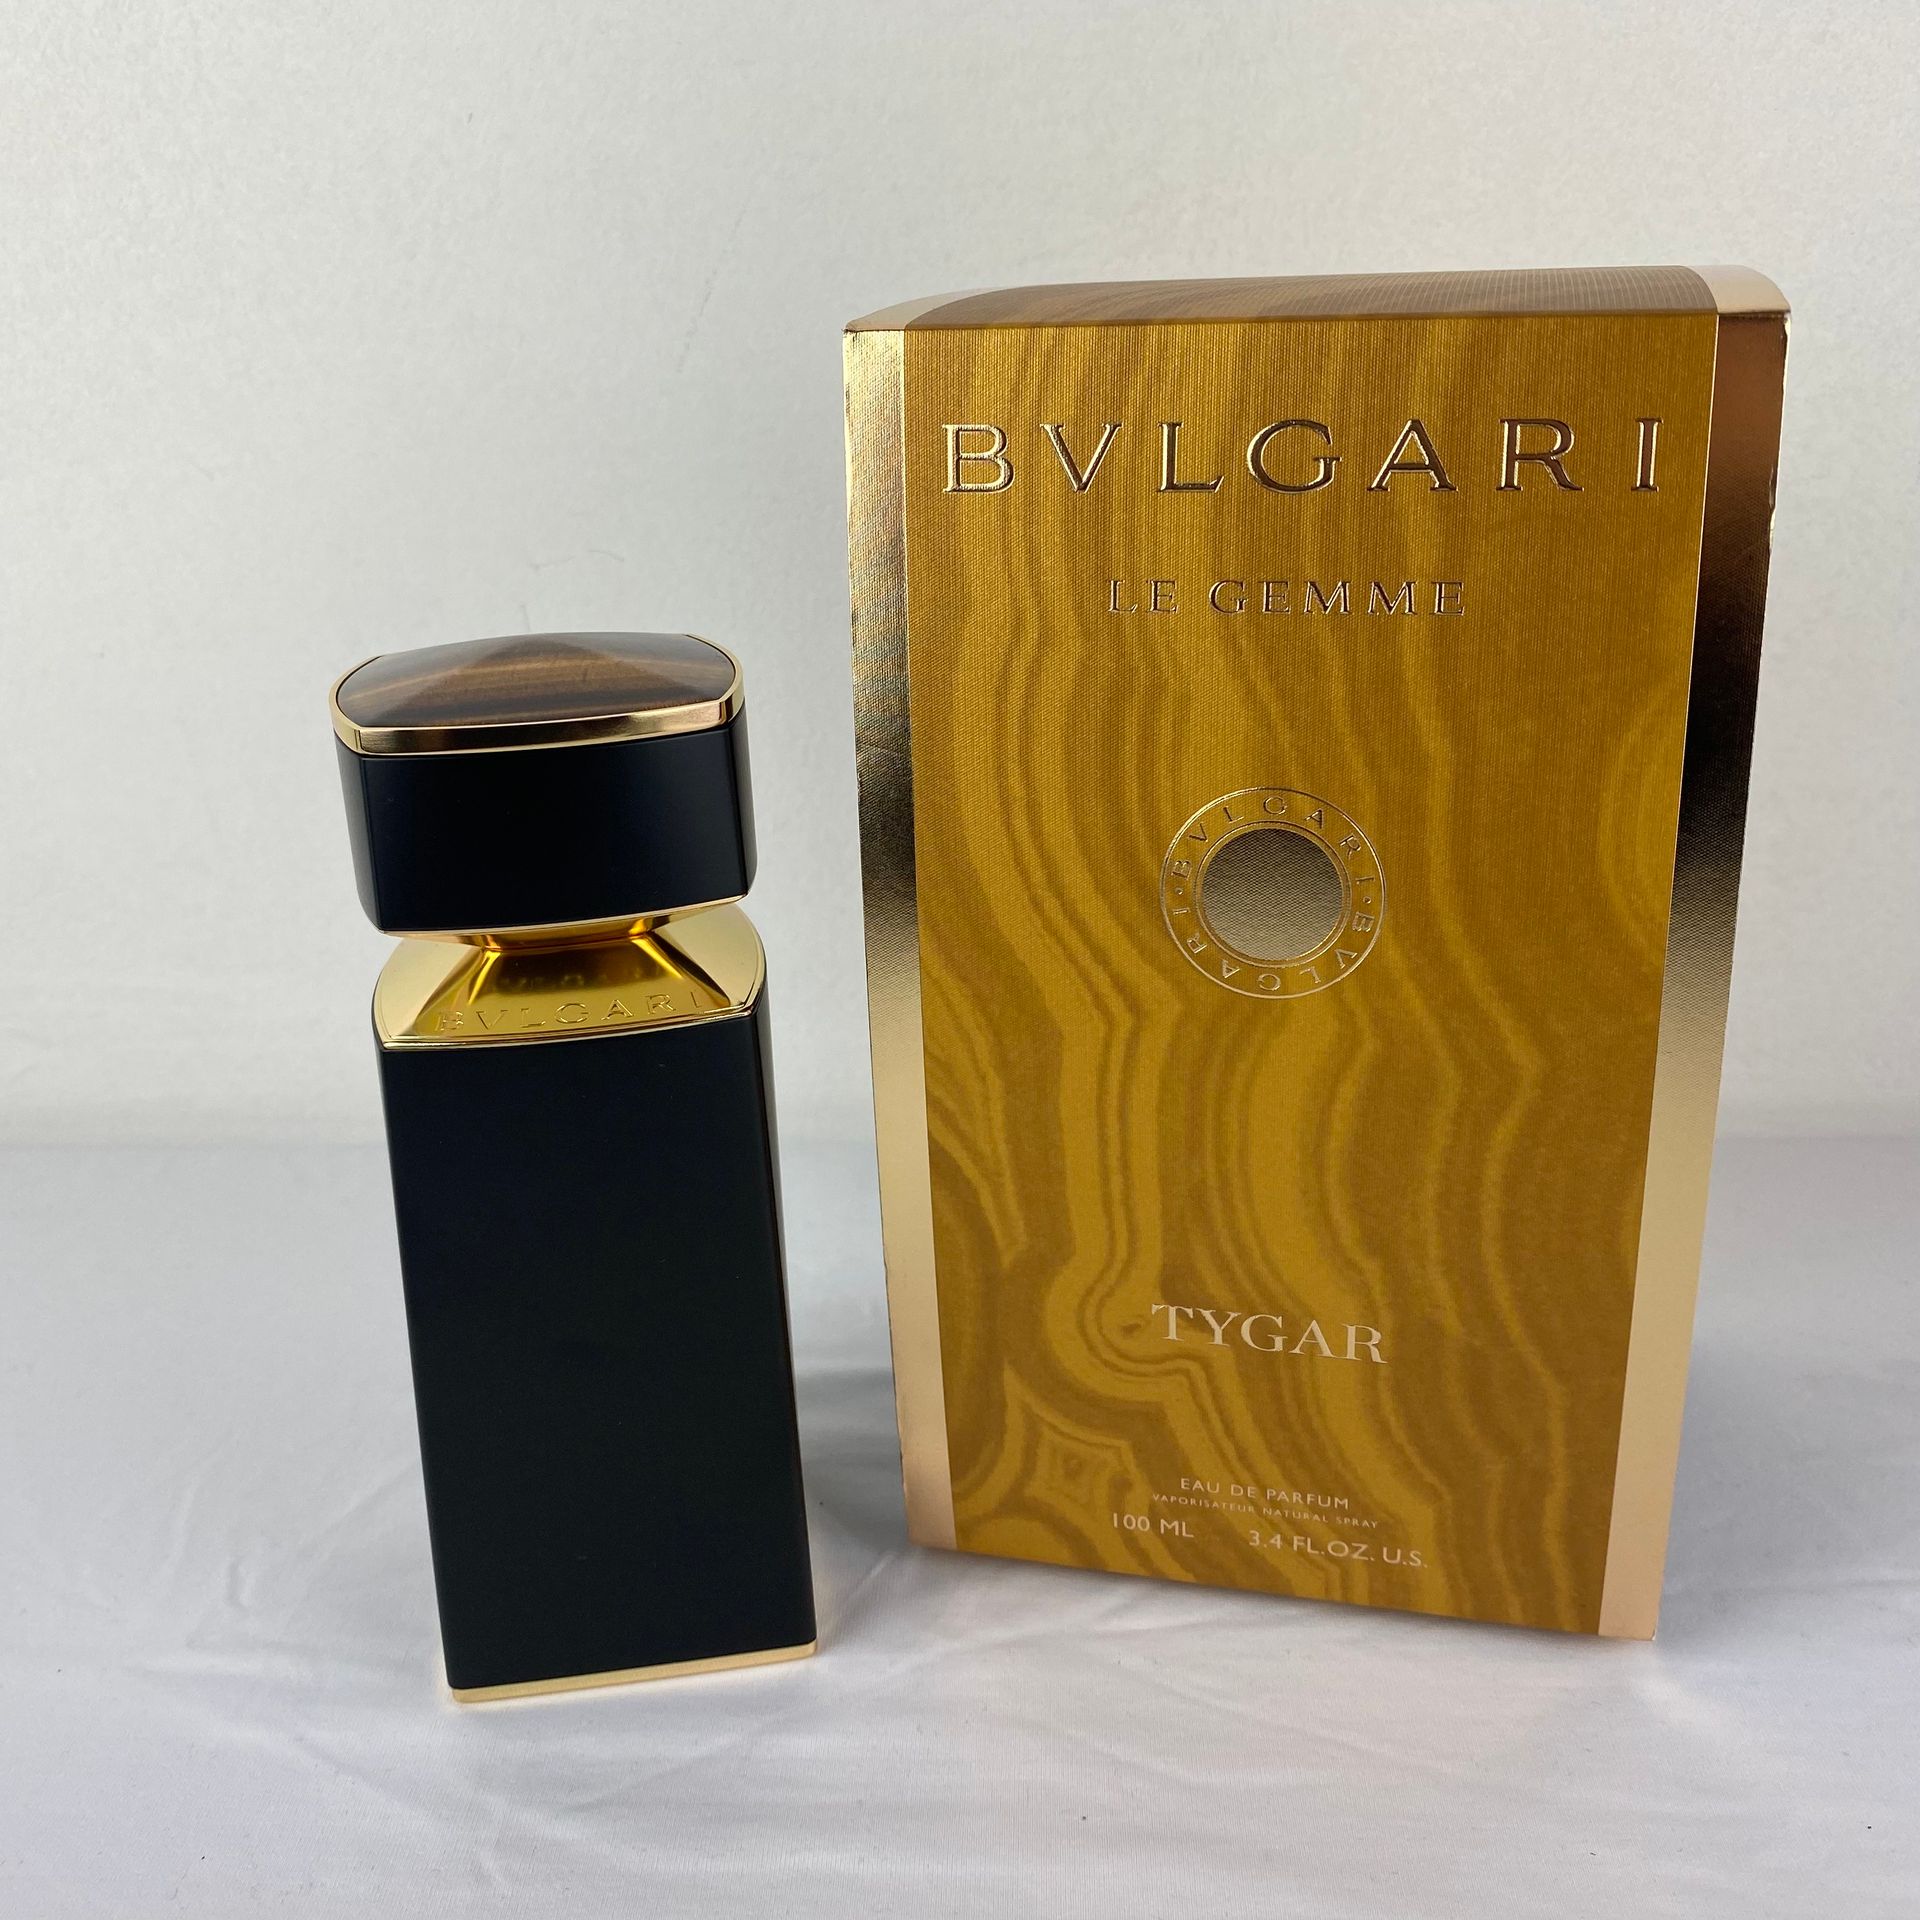 BULGARI 宝格丽香水Le Gemme Tygar 100ml套装2件，收藏盒内有Ongil du Tigre。